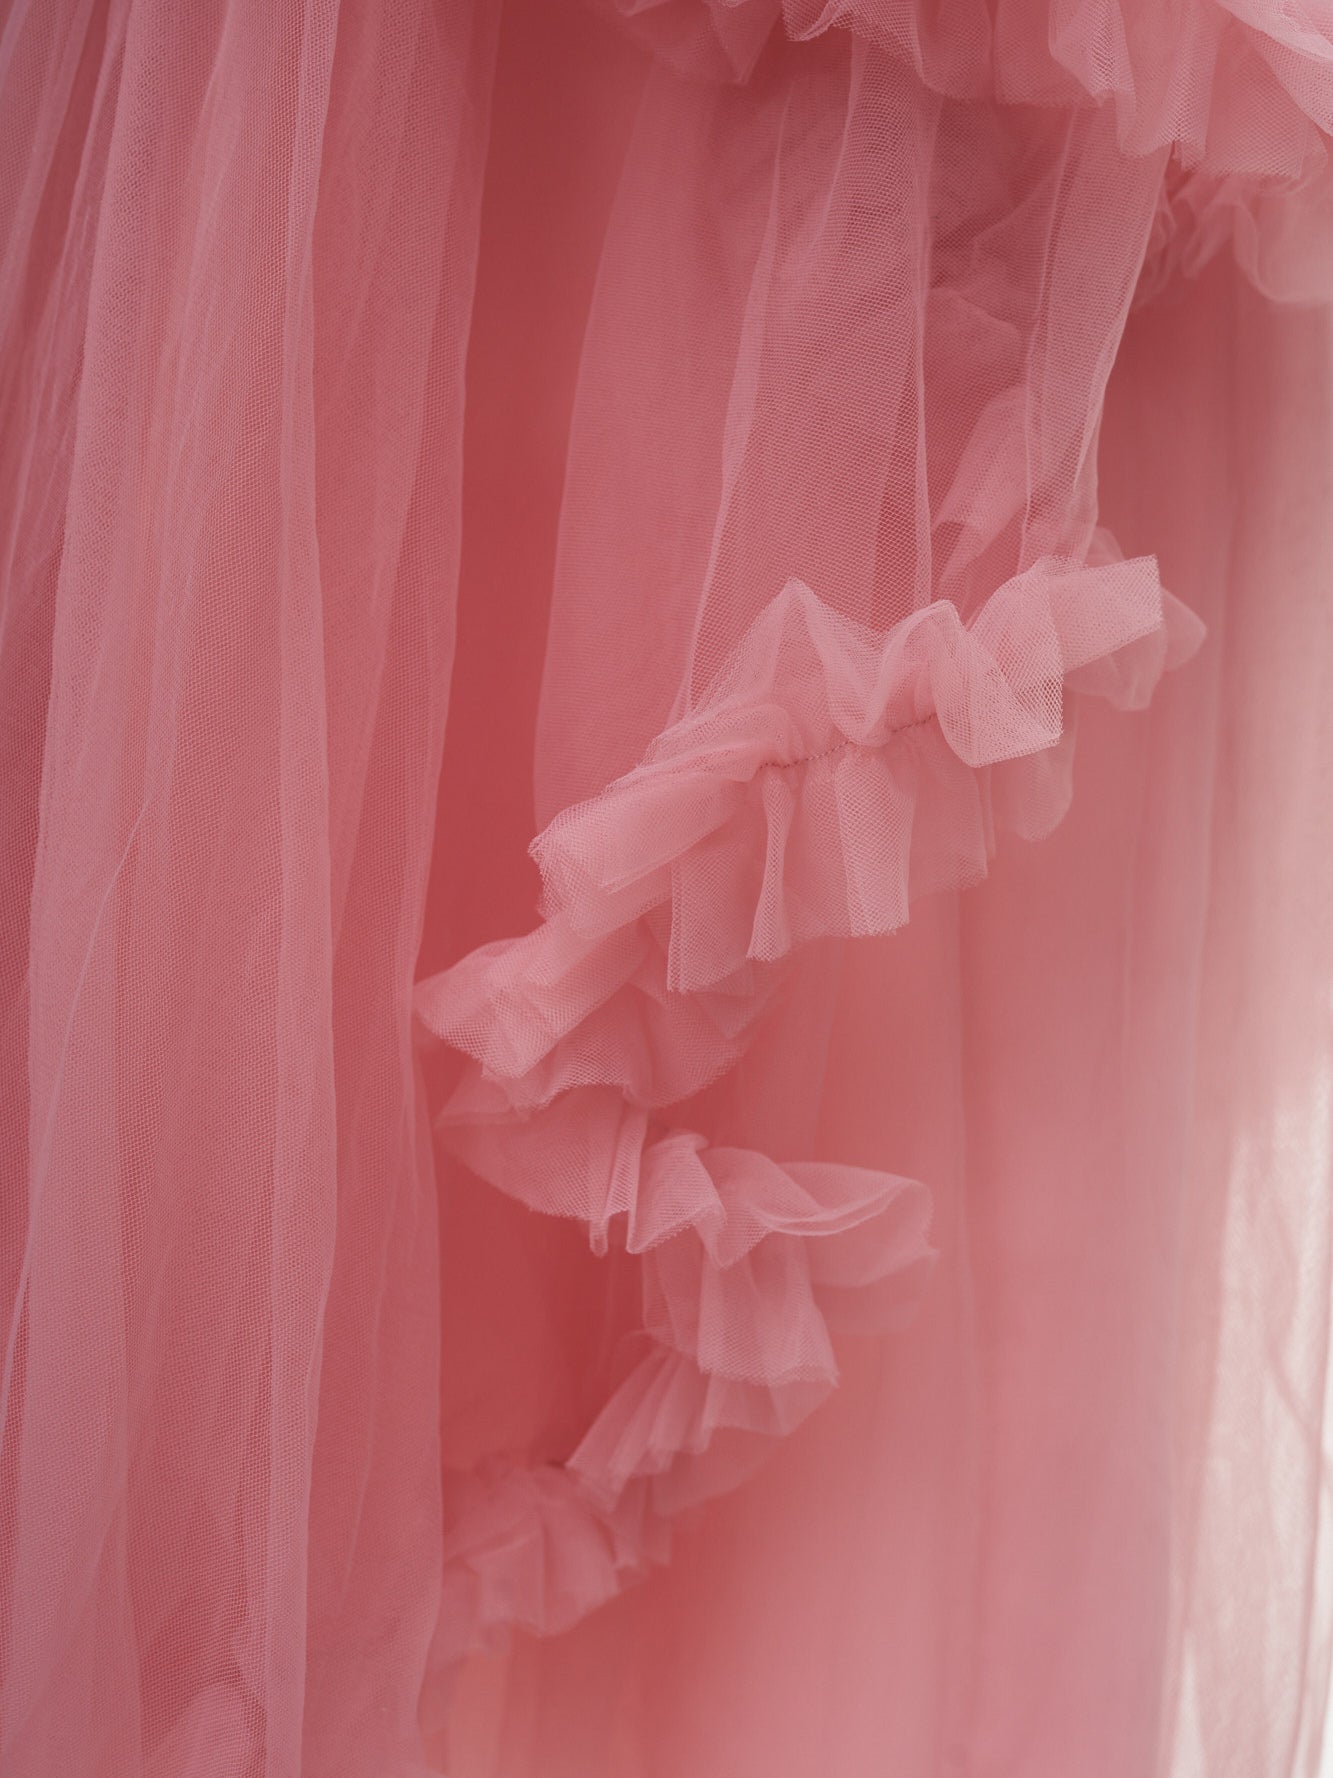 Roze Pailletten Tule Prinsessenjurk voor Kinderen voor Fotografie